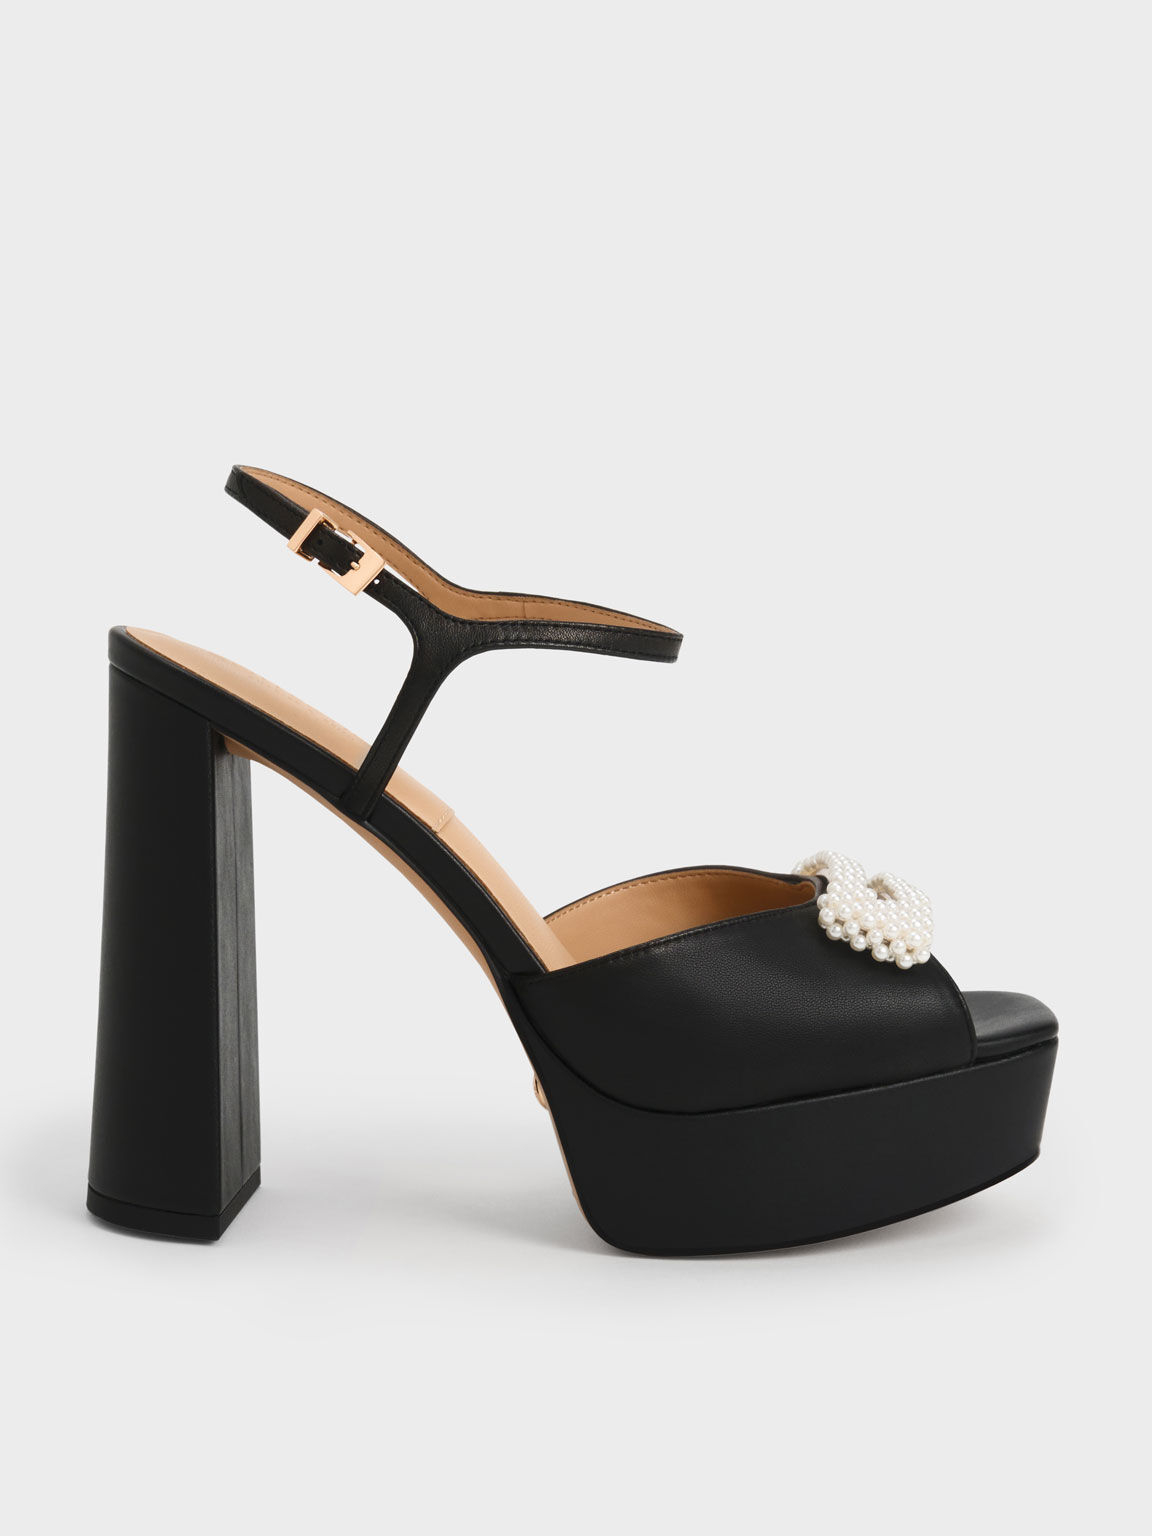 Share more than 139 black platform sandal heels latest